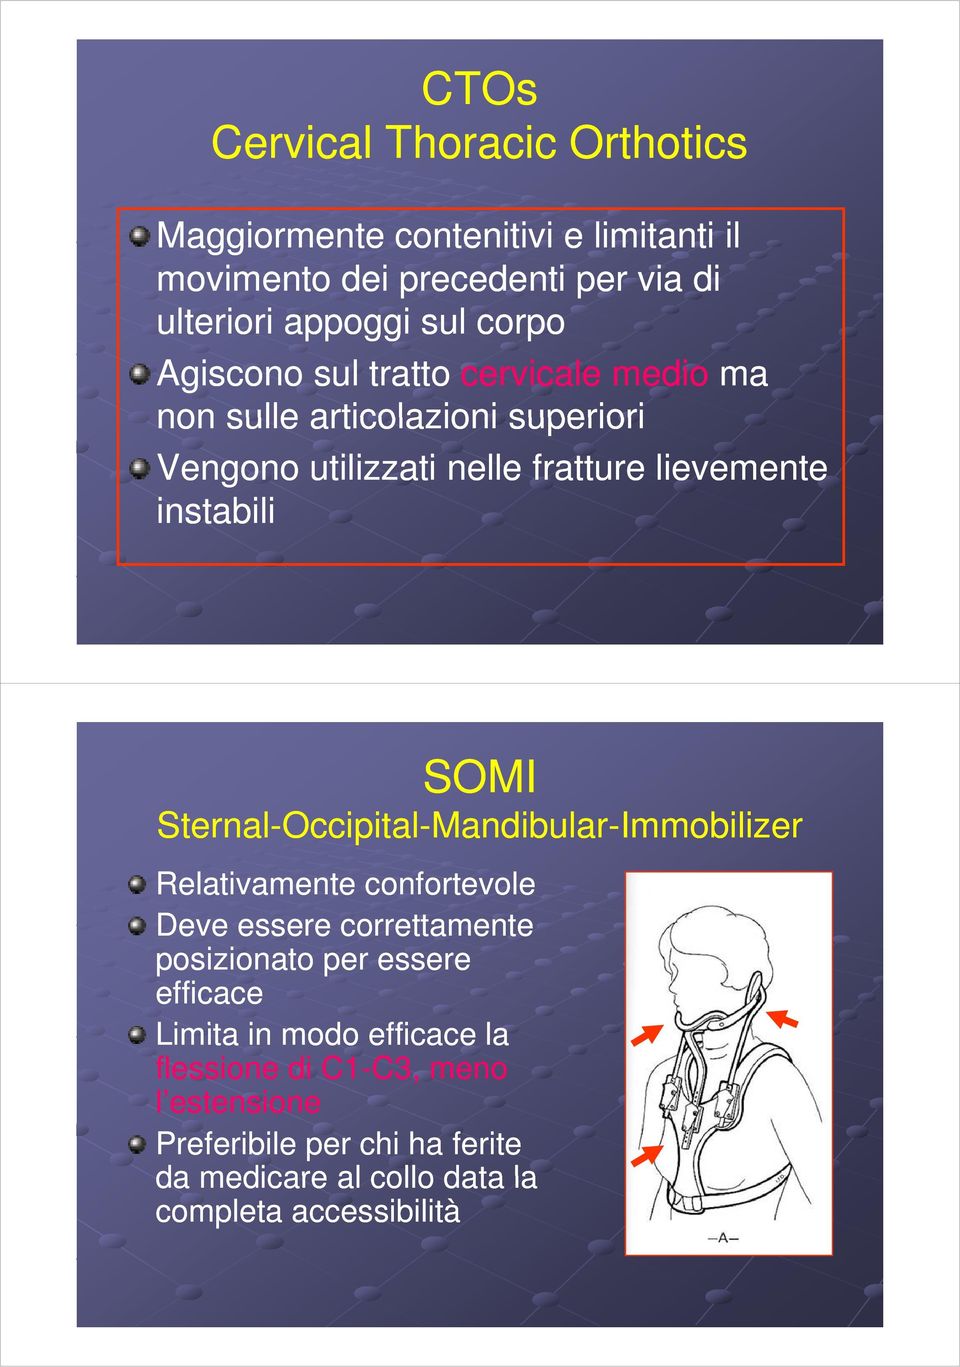 Sternal-Occipital-Mandibular-Immobilizer Relativamente t confortevole Deve essere correttamente posizionato i per essere efficace Limita